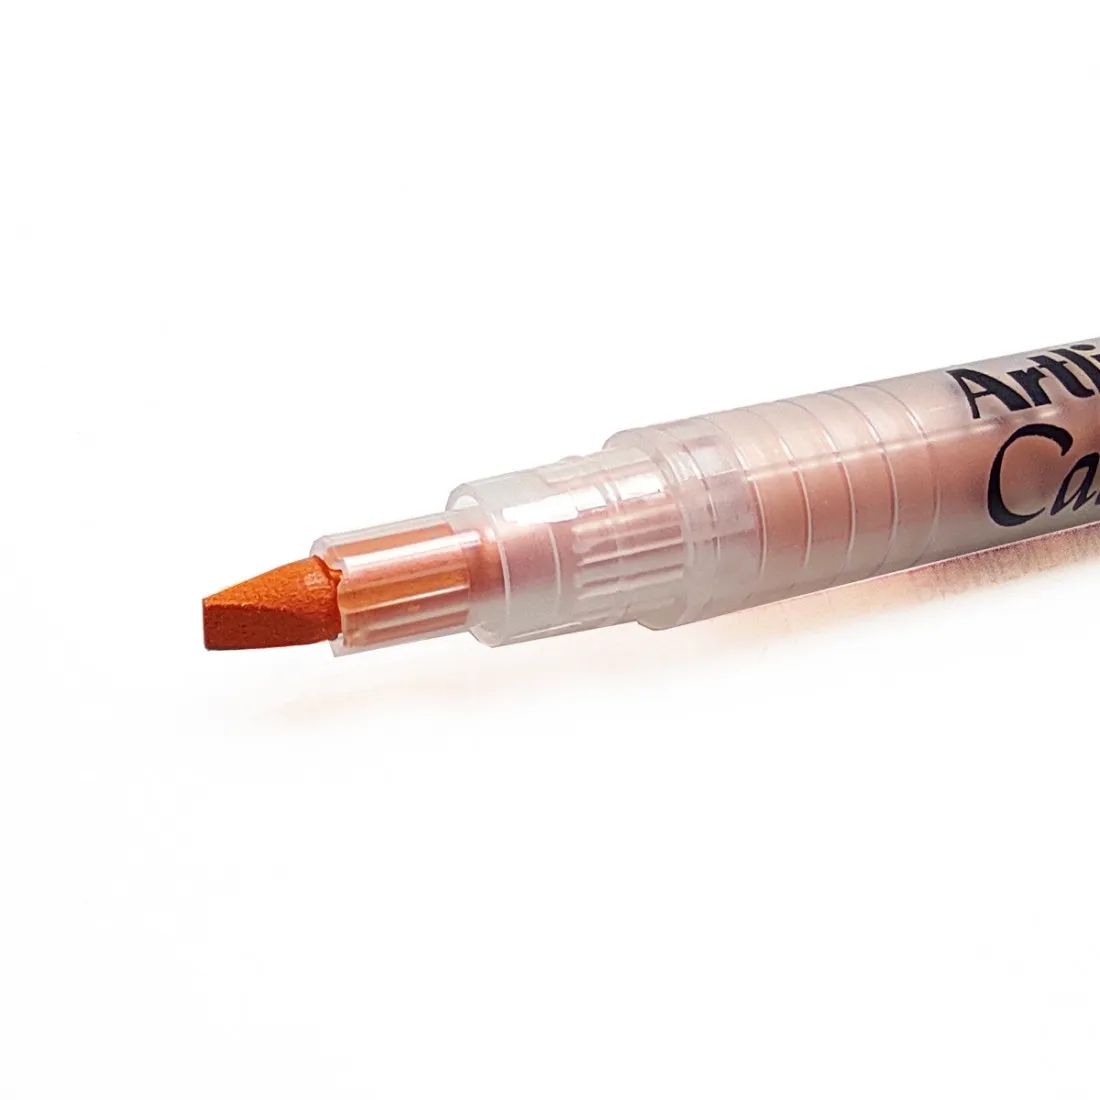 Artline Calligraphy Pen Orange Ink Pen Tip Size 3.0 mm Pack of 1